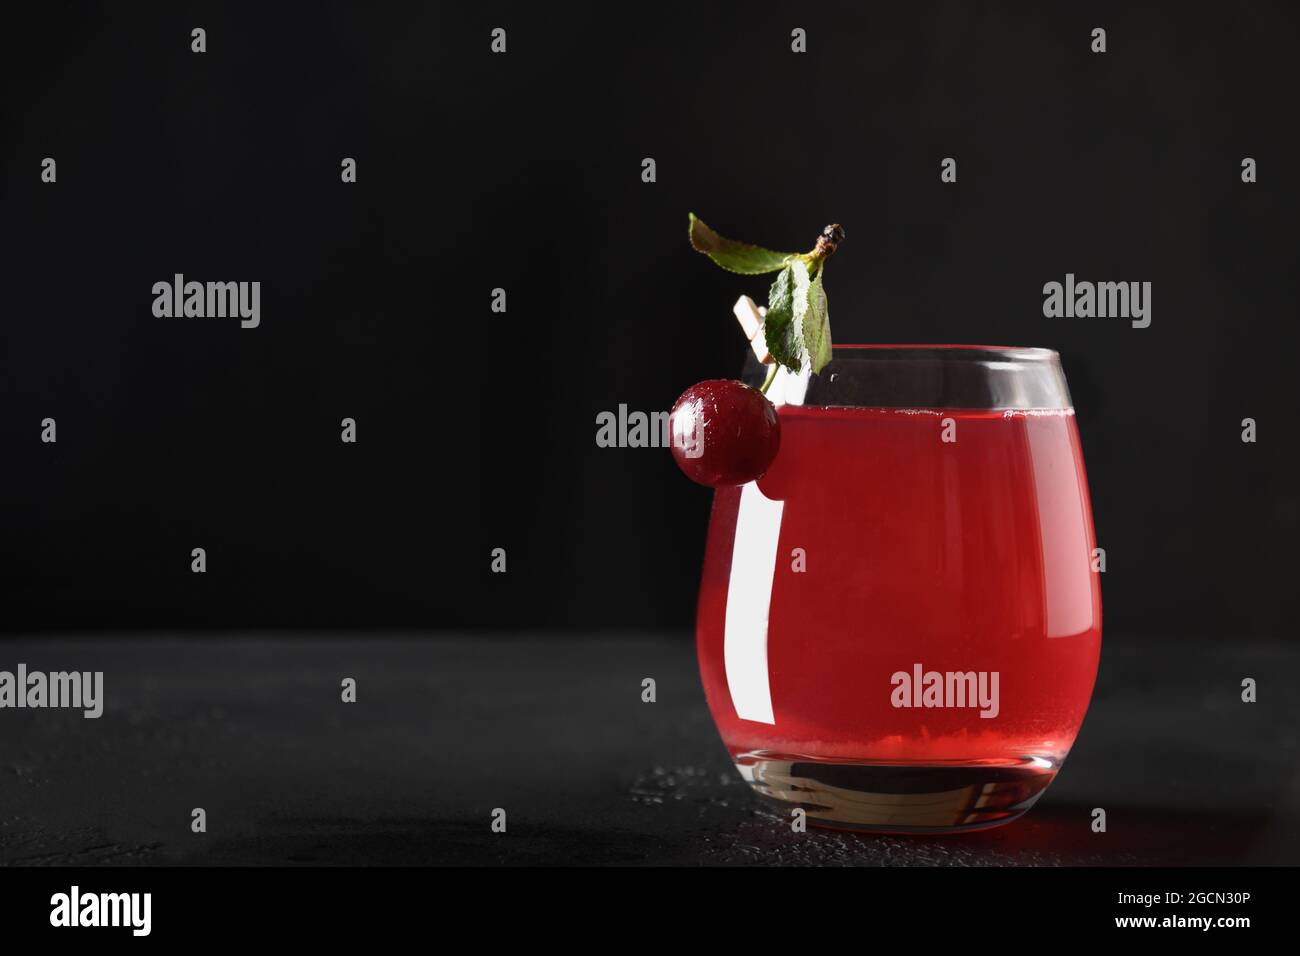 Copa de bebida fresca de cereza roja o compota de verano casera sobre fondo negro. Primer plano. Foto de stock